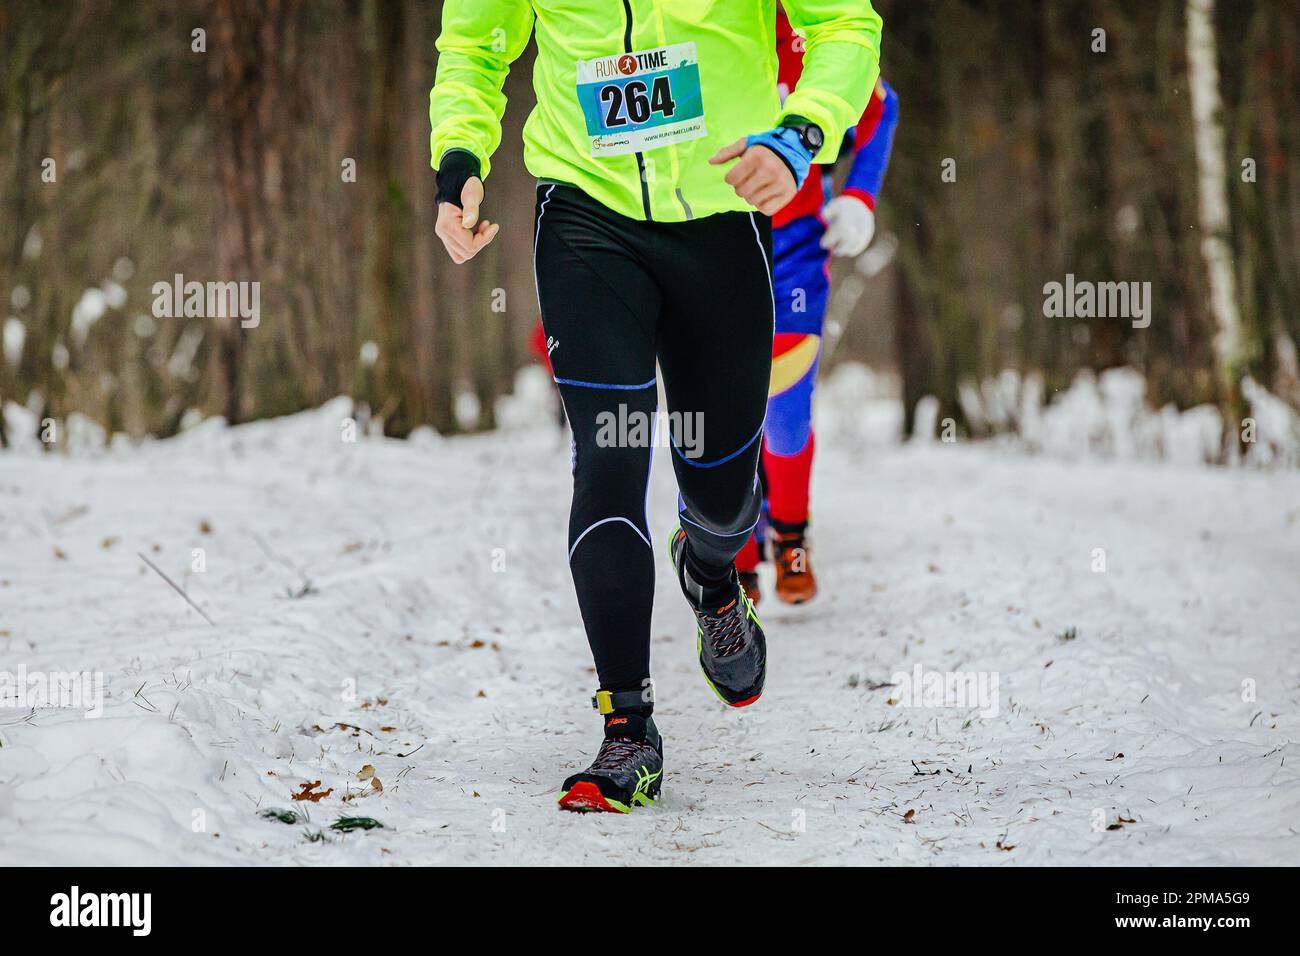 https://c8.alamy.com/comp/2PMA5G9/ekaterinburg-russia-november-26-male-runner-run-winter-trail-race-in-leggings-kalenji-and-asics-running-shoes-2PMA5G9.jpg